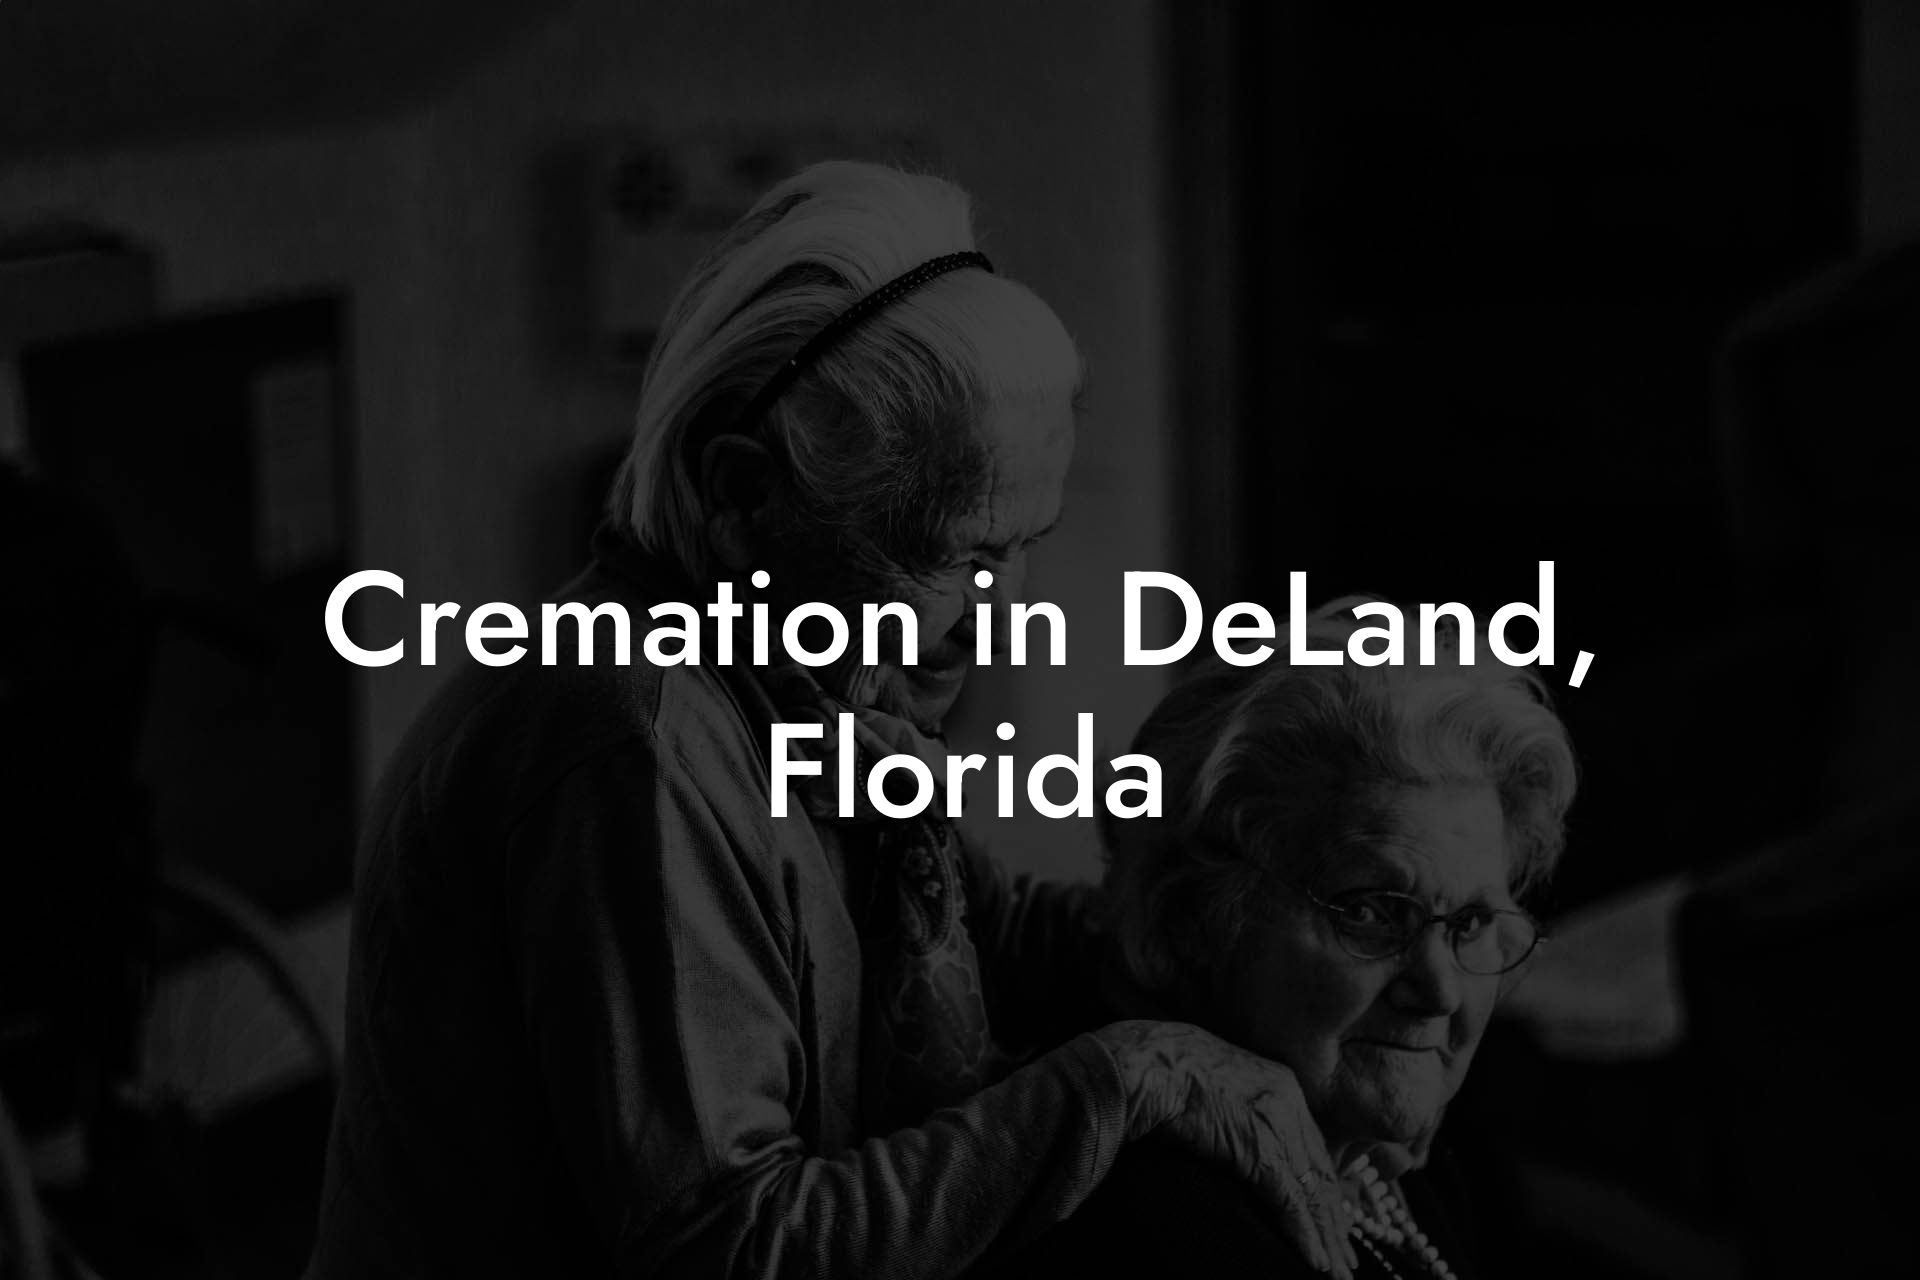 Cremation in DeLand, Florida